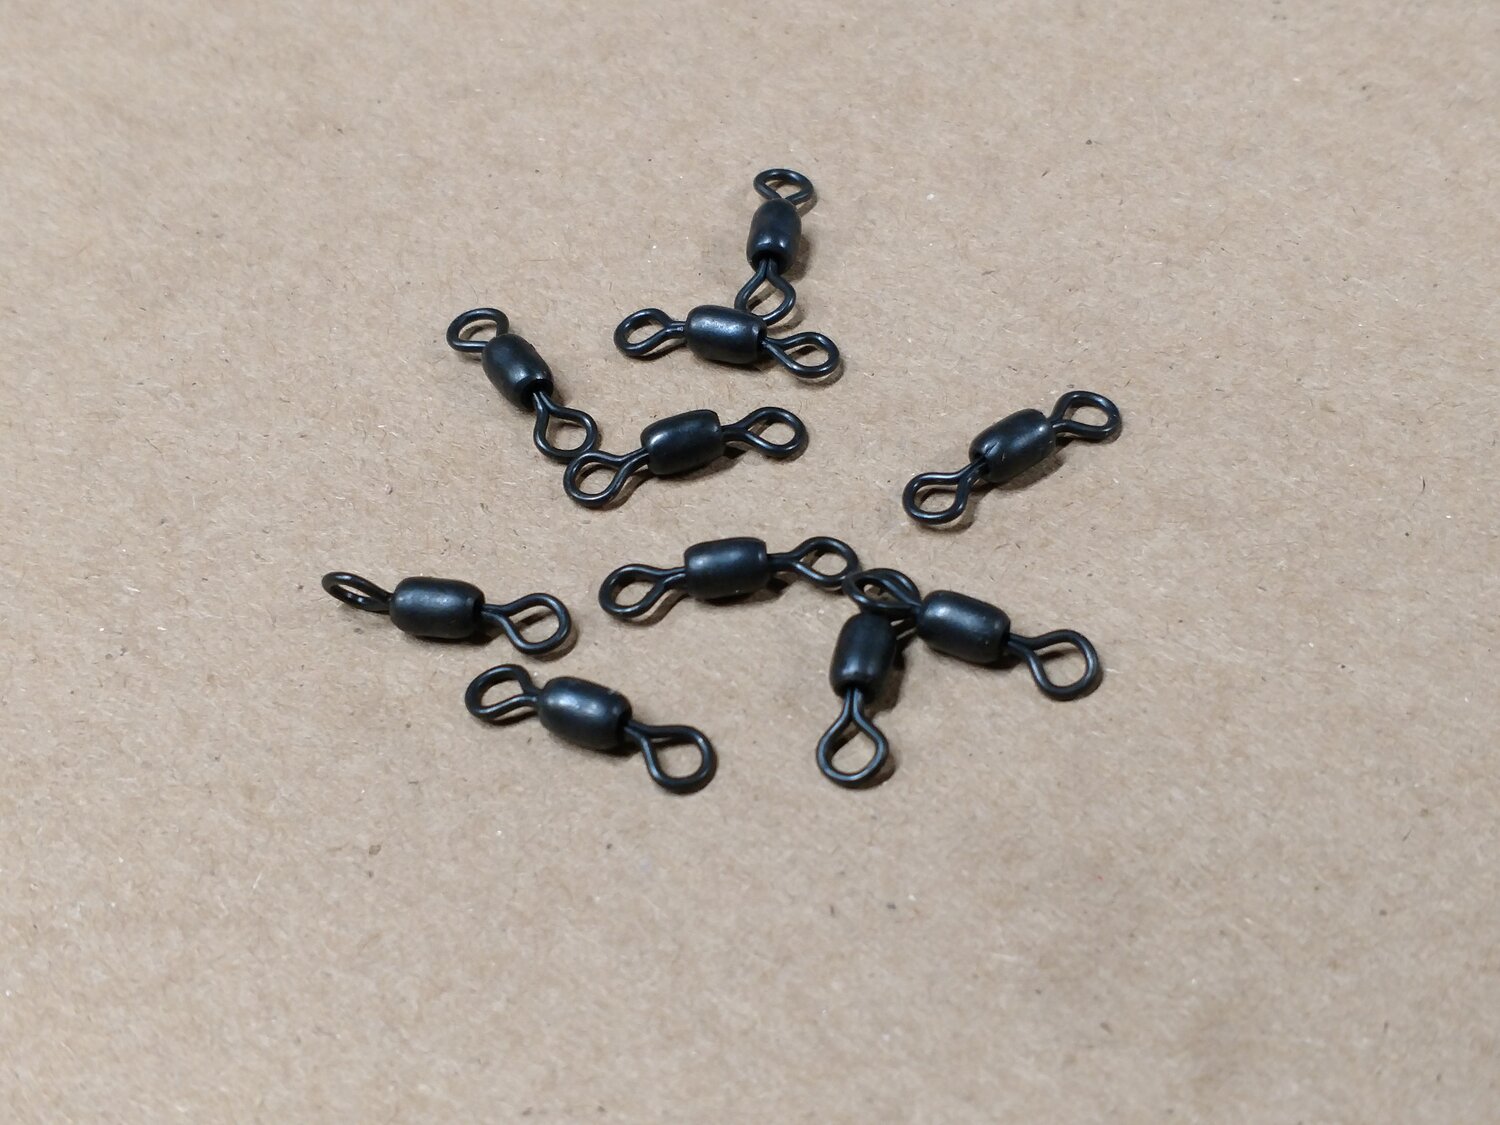 Rosco Stainless Steel Split Ring #4H - Black (25 Pack) - Precision